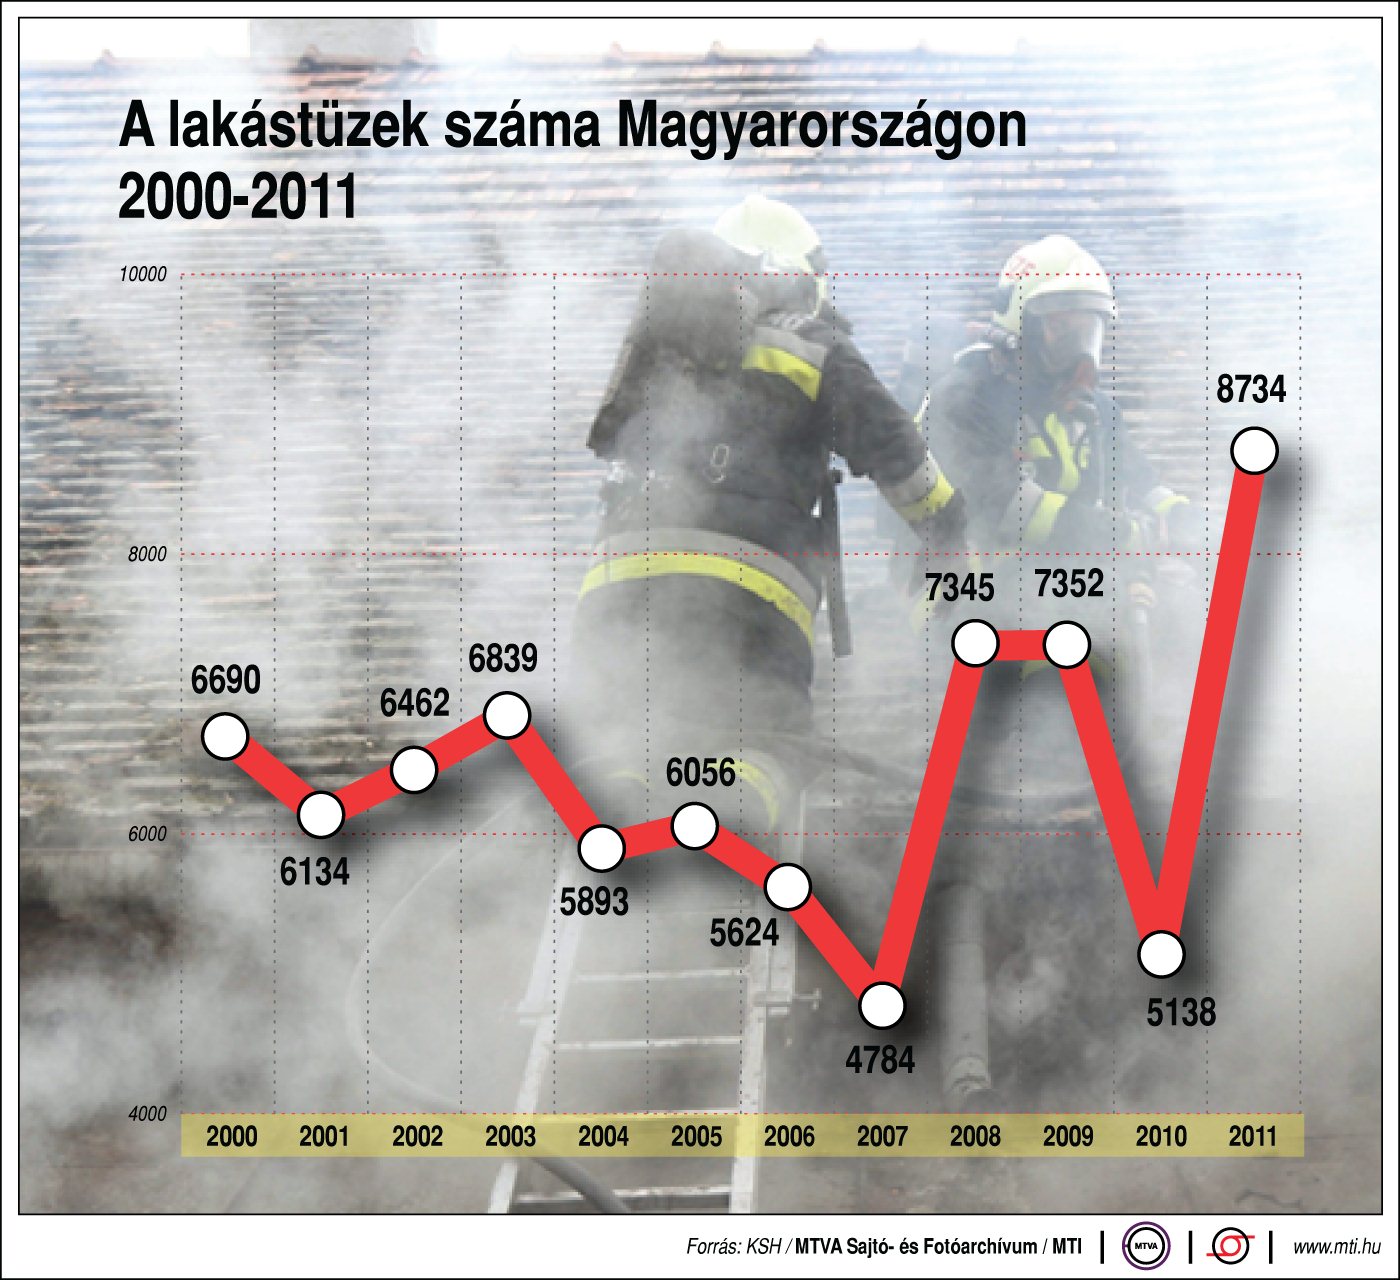 Lakástüzek száma Magyarországon